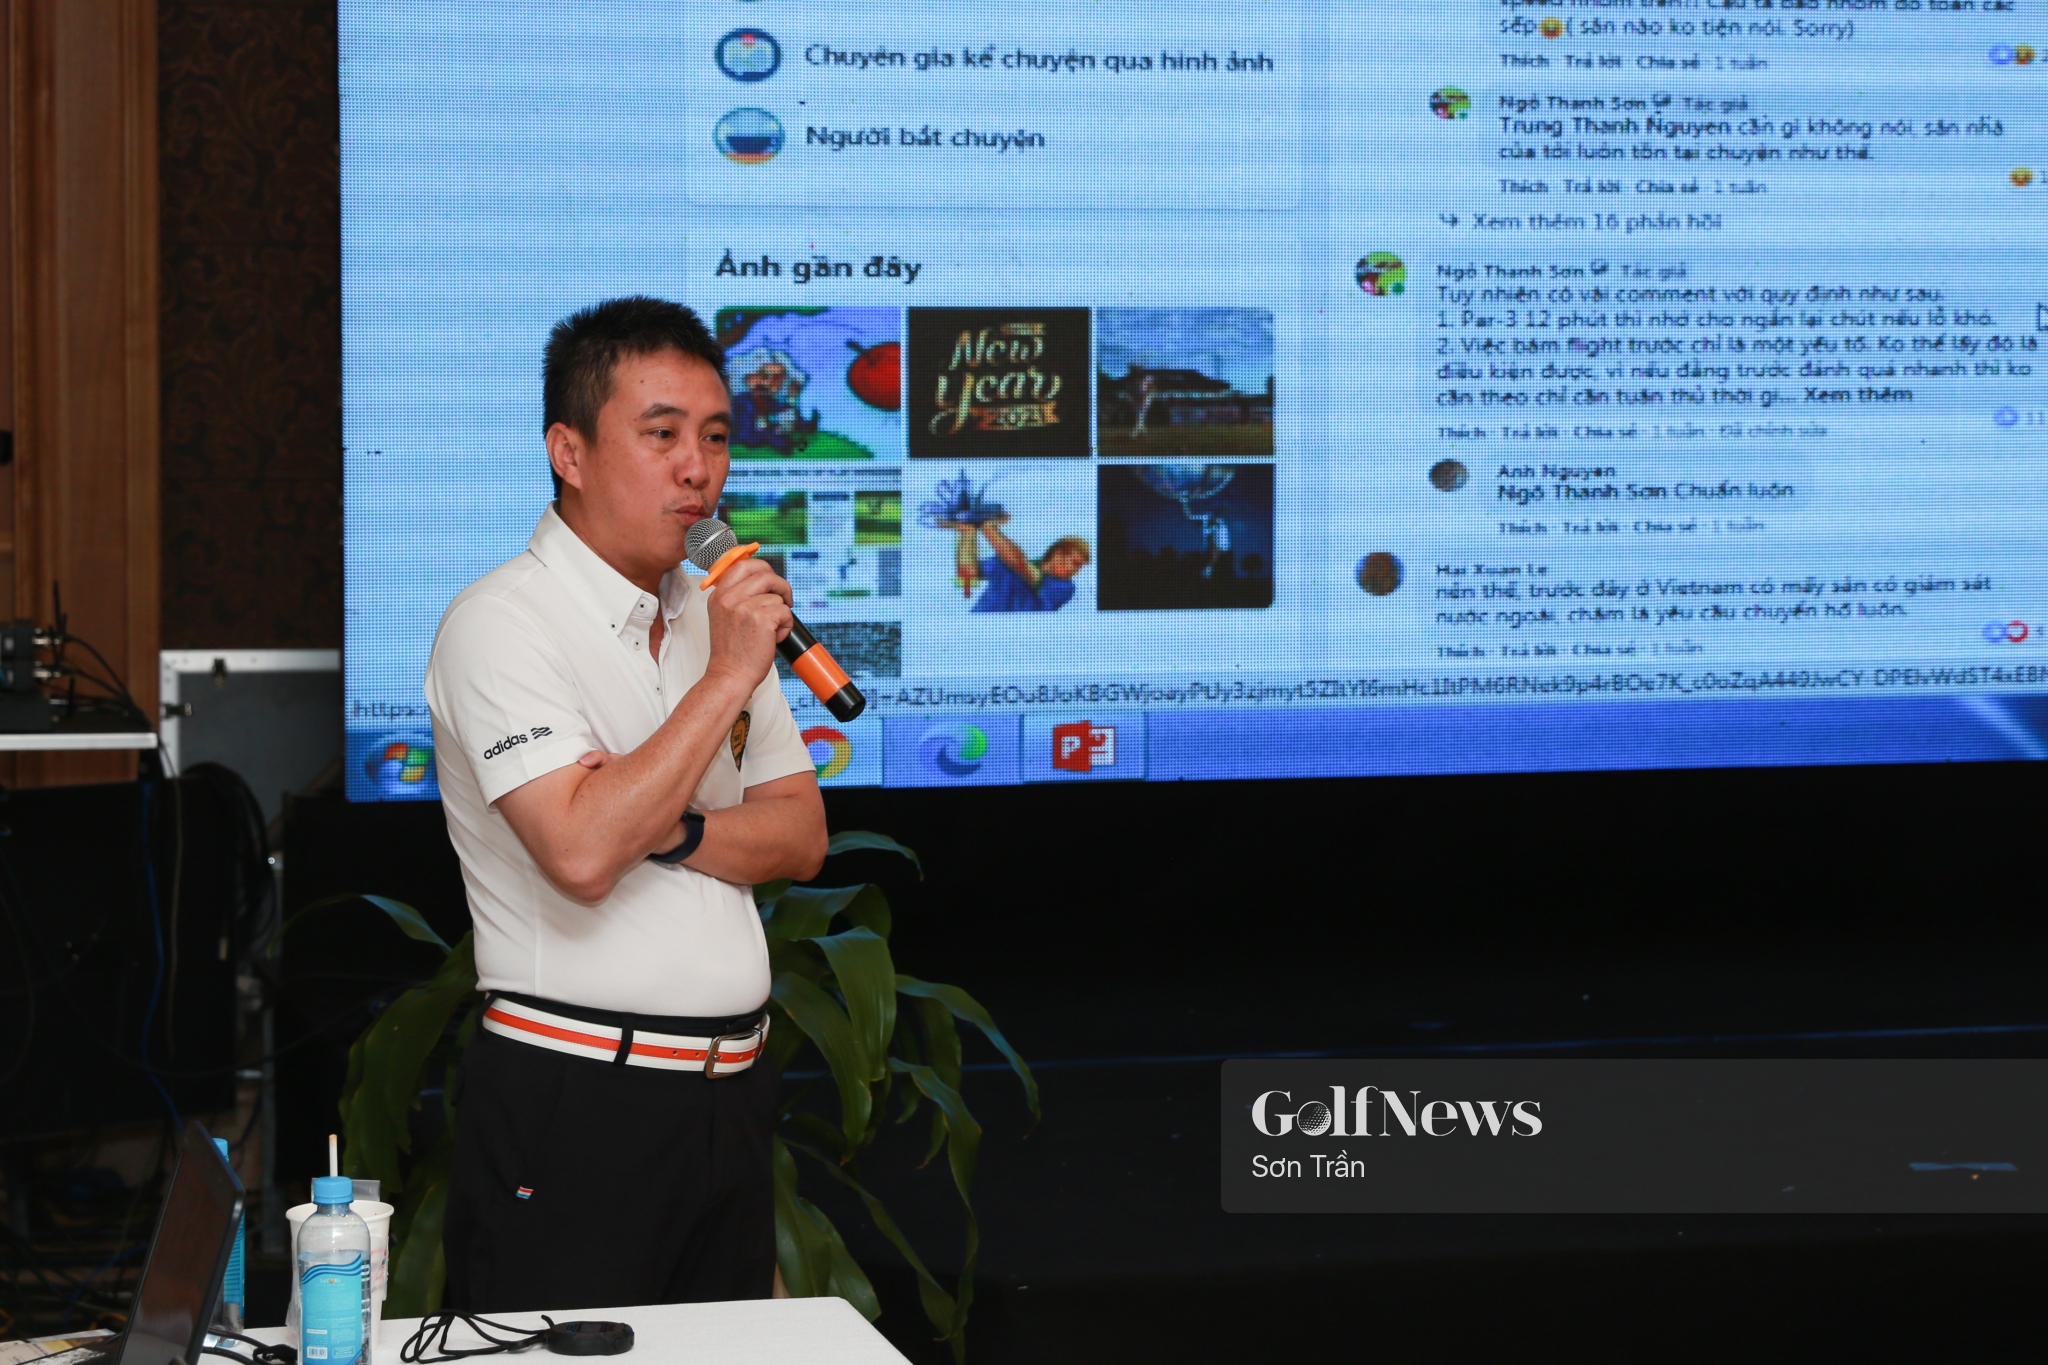 CLB Trọng tài Golf Việt Nam (VGR) lần đầu tổ chức buổi thảo luận chia sẻ về nghệ thuật trọng tài